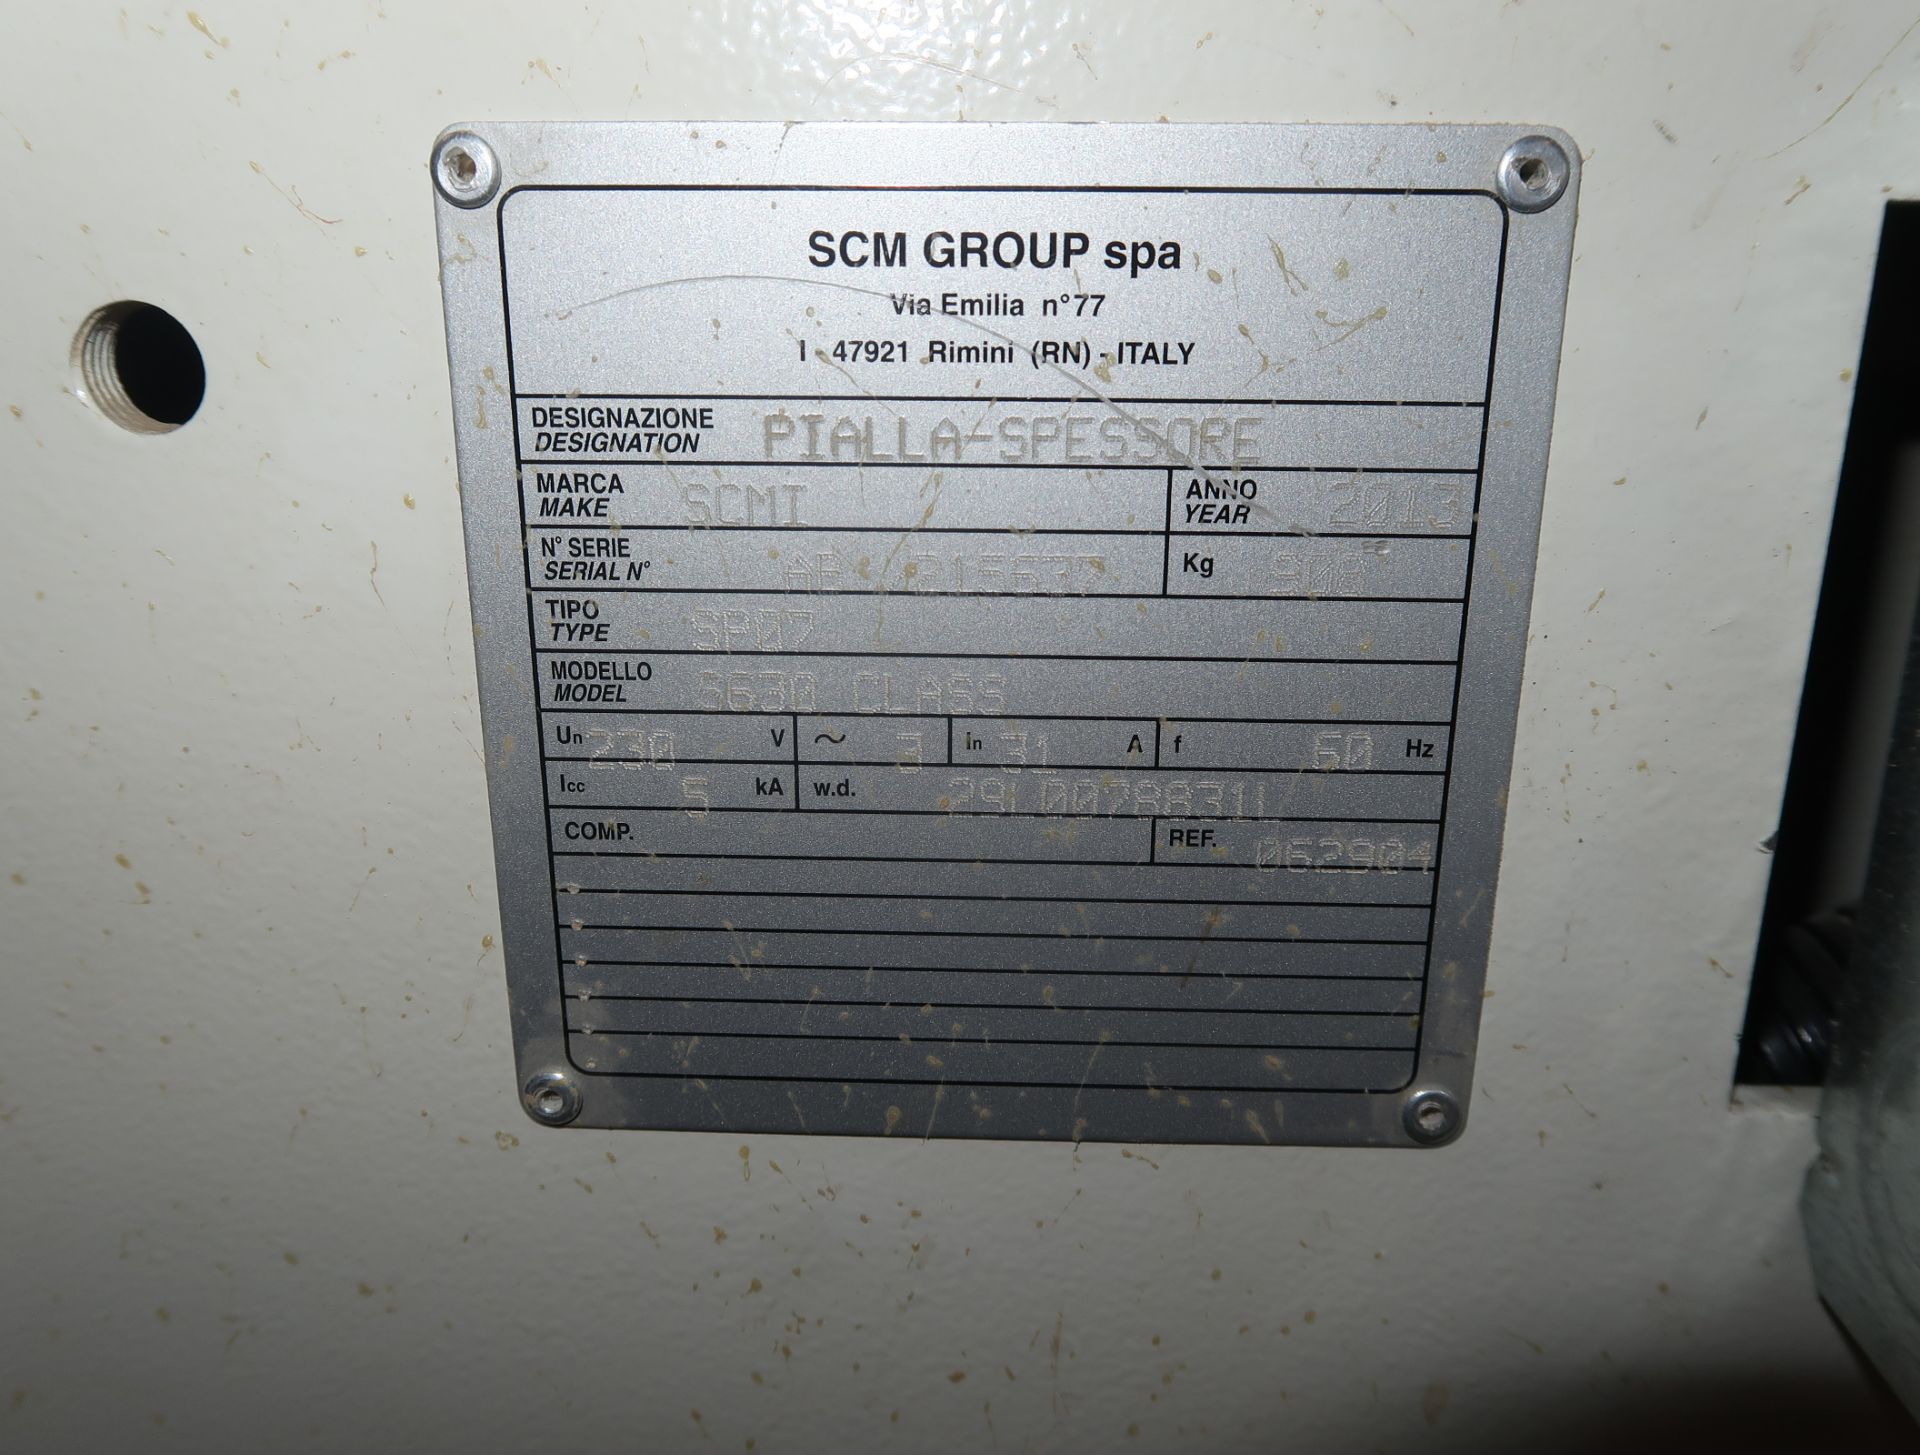 2013 SCMI S630 CLASS PLANER 24" HEAVY DUTY, SN. AB/215637, 230V 3PH - Image 4 of 4